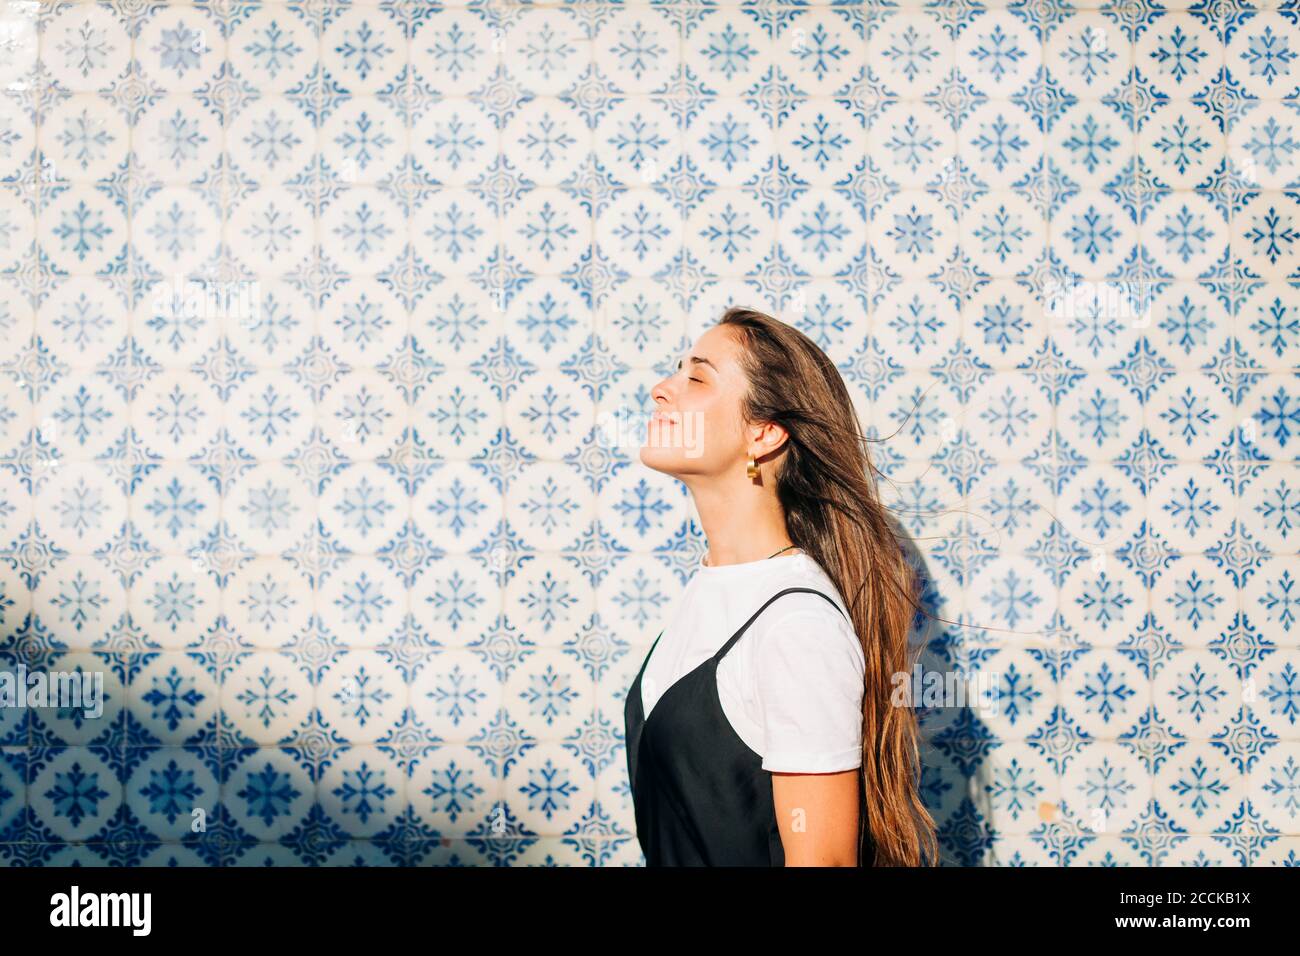 Lächelnd schöne Frau mit geschlossenen Augen stehen an der gefliesten Wand An sonnigen Tag Stockfoto